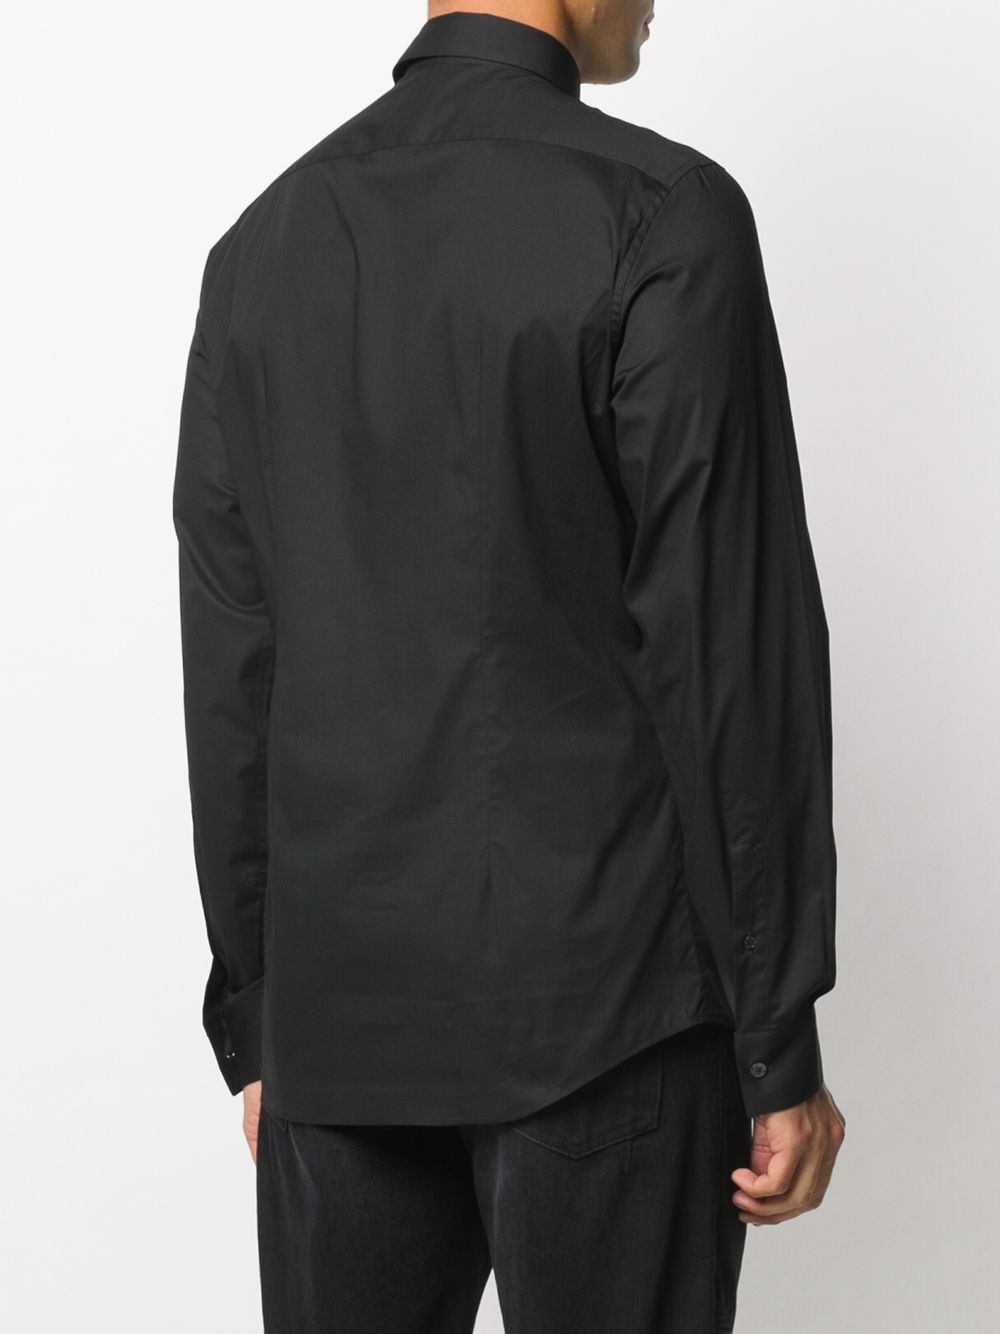 фото Les hommes рубашка с вышитым логотипом и карманом на молнии